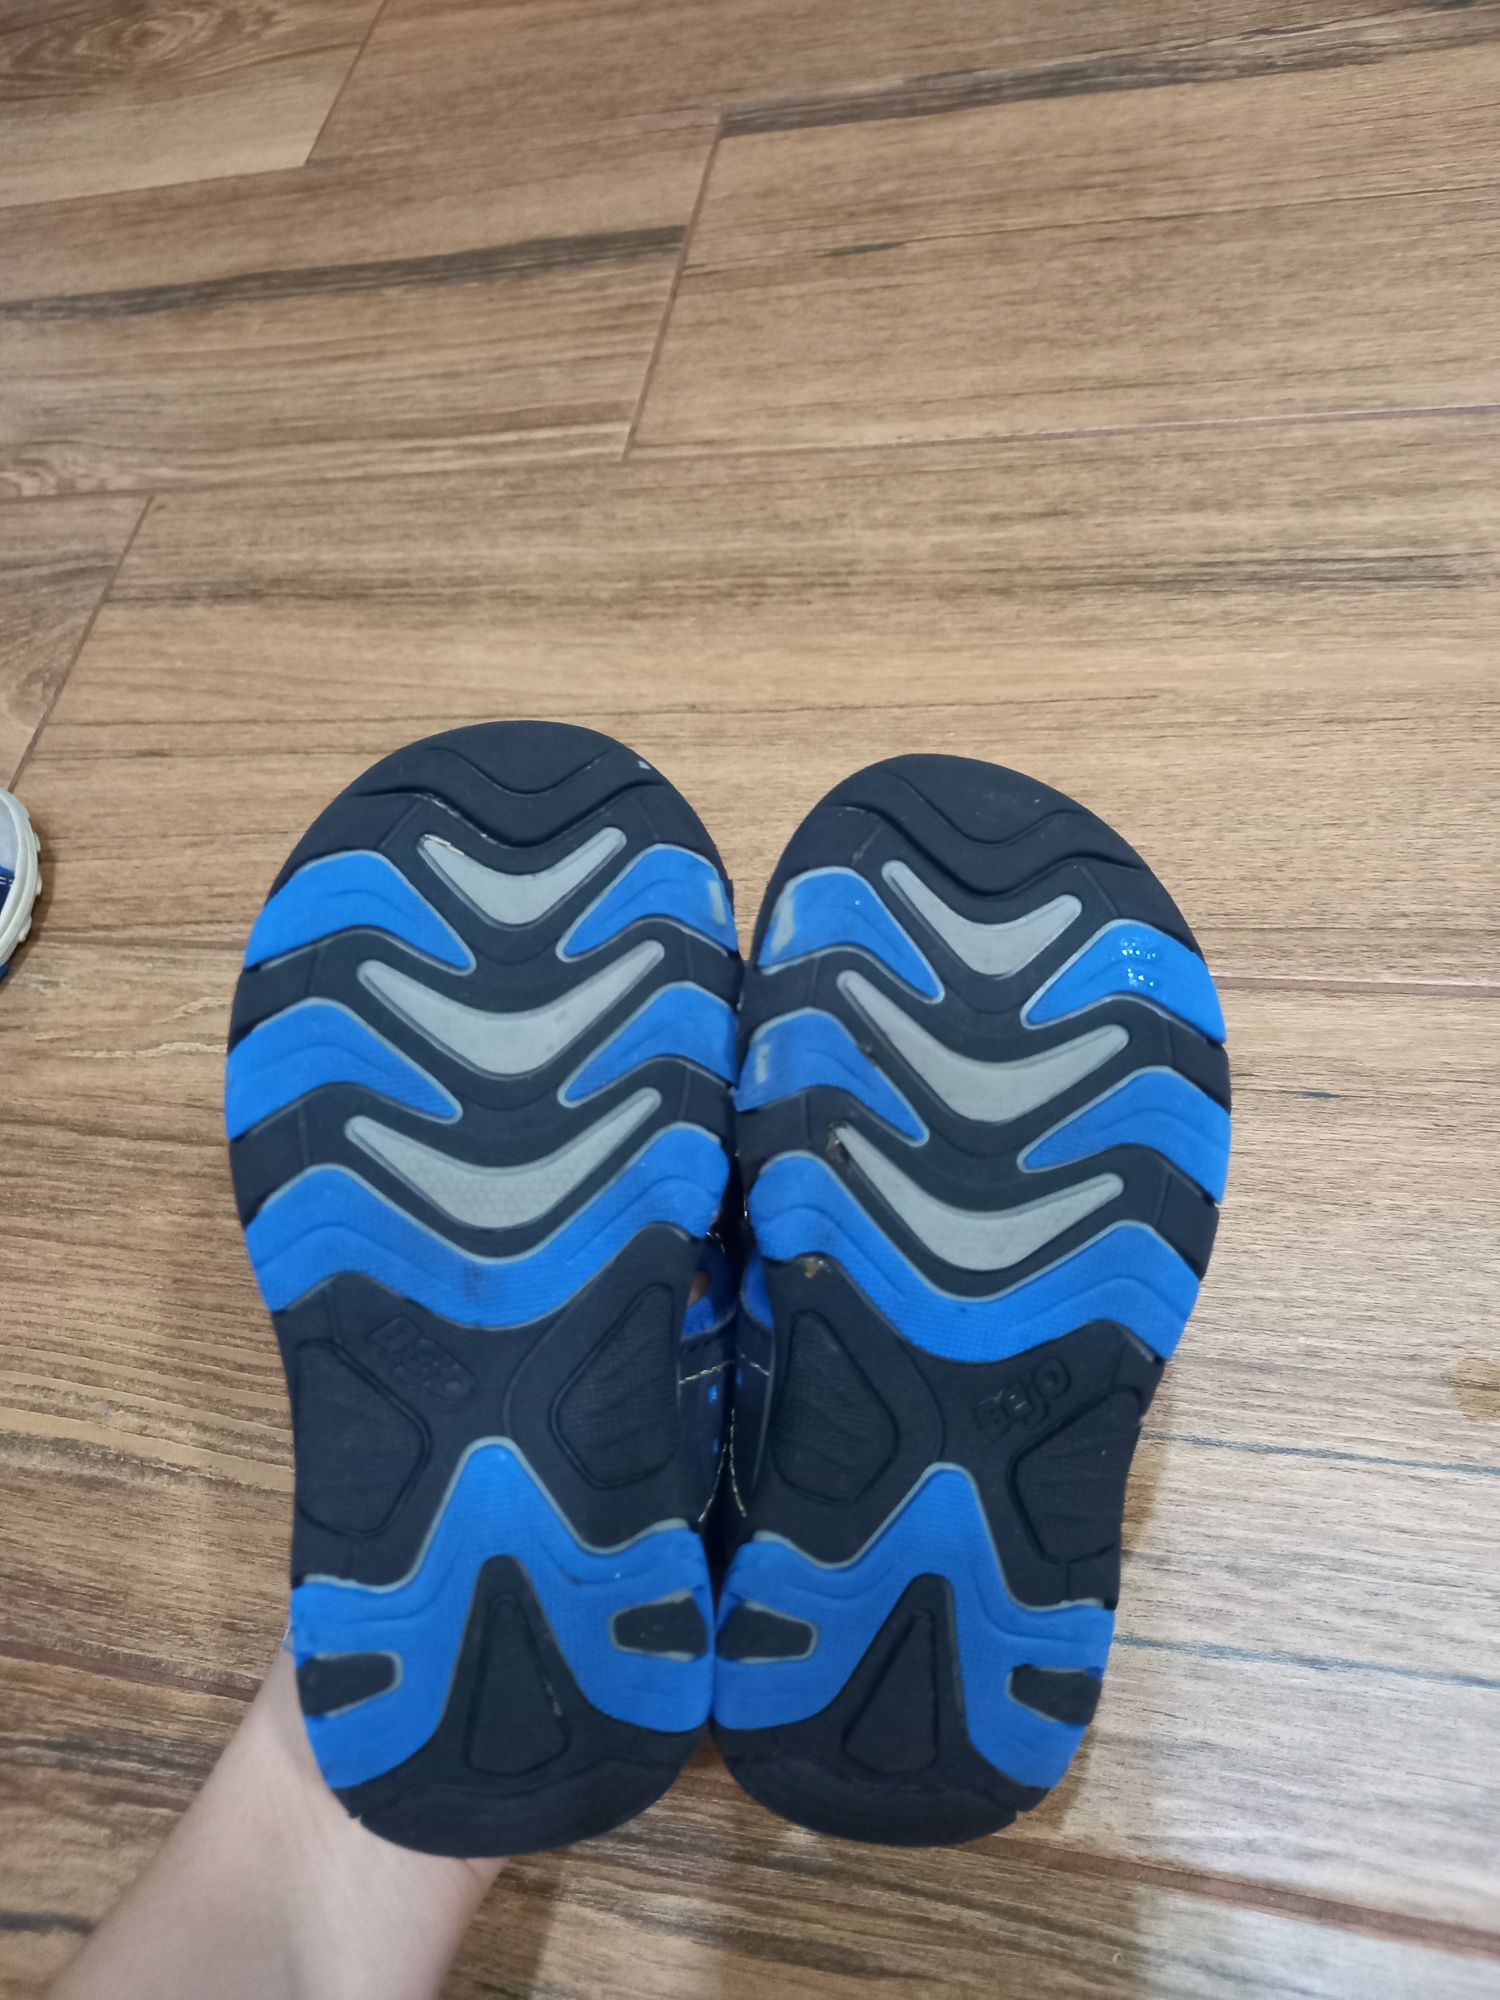 Vand sandale colorate marimea 24